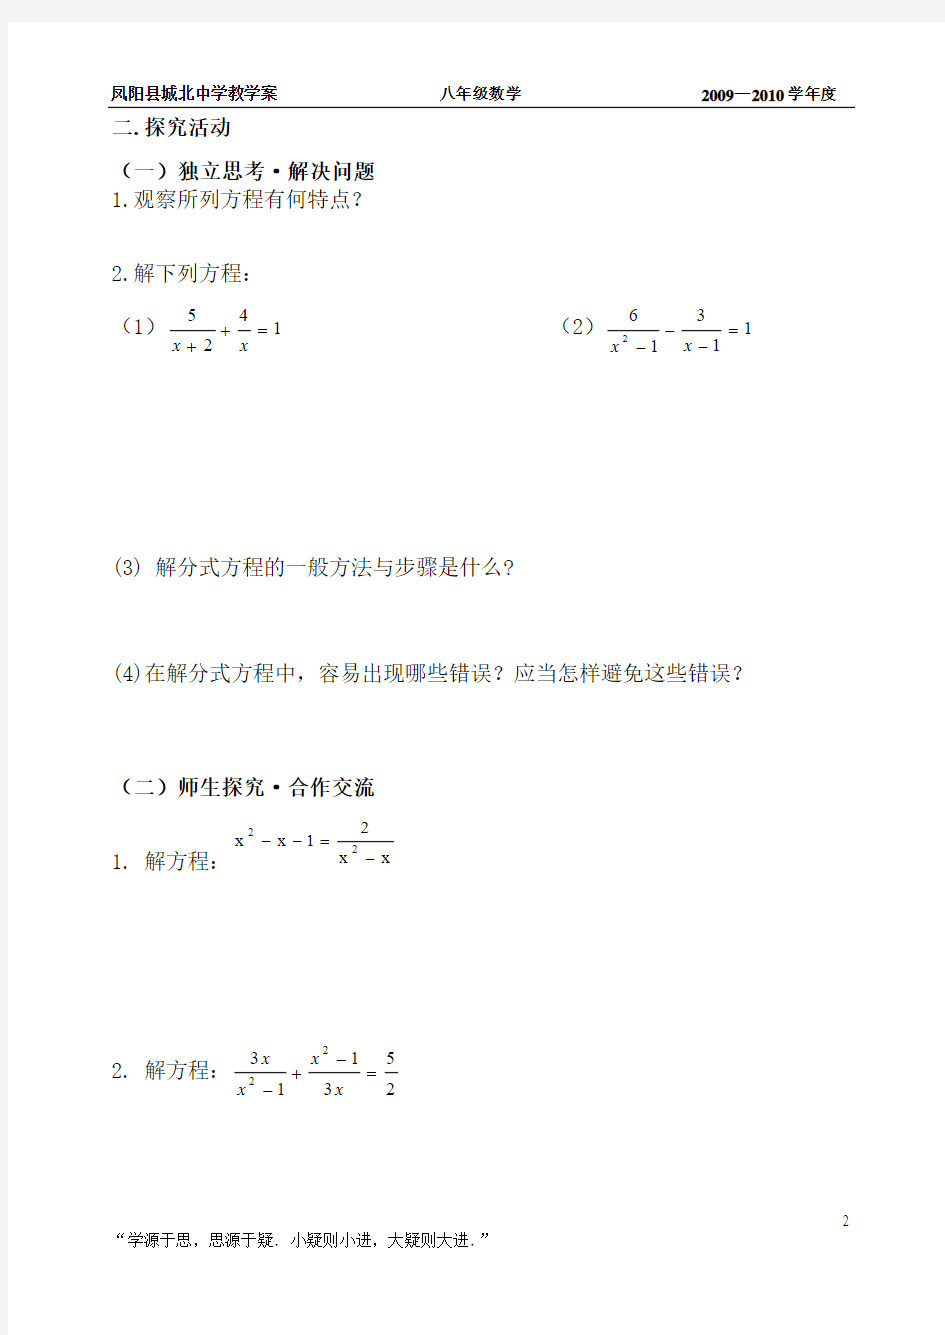 18.5 可化为一元二次方程的分式方程(4)